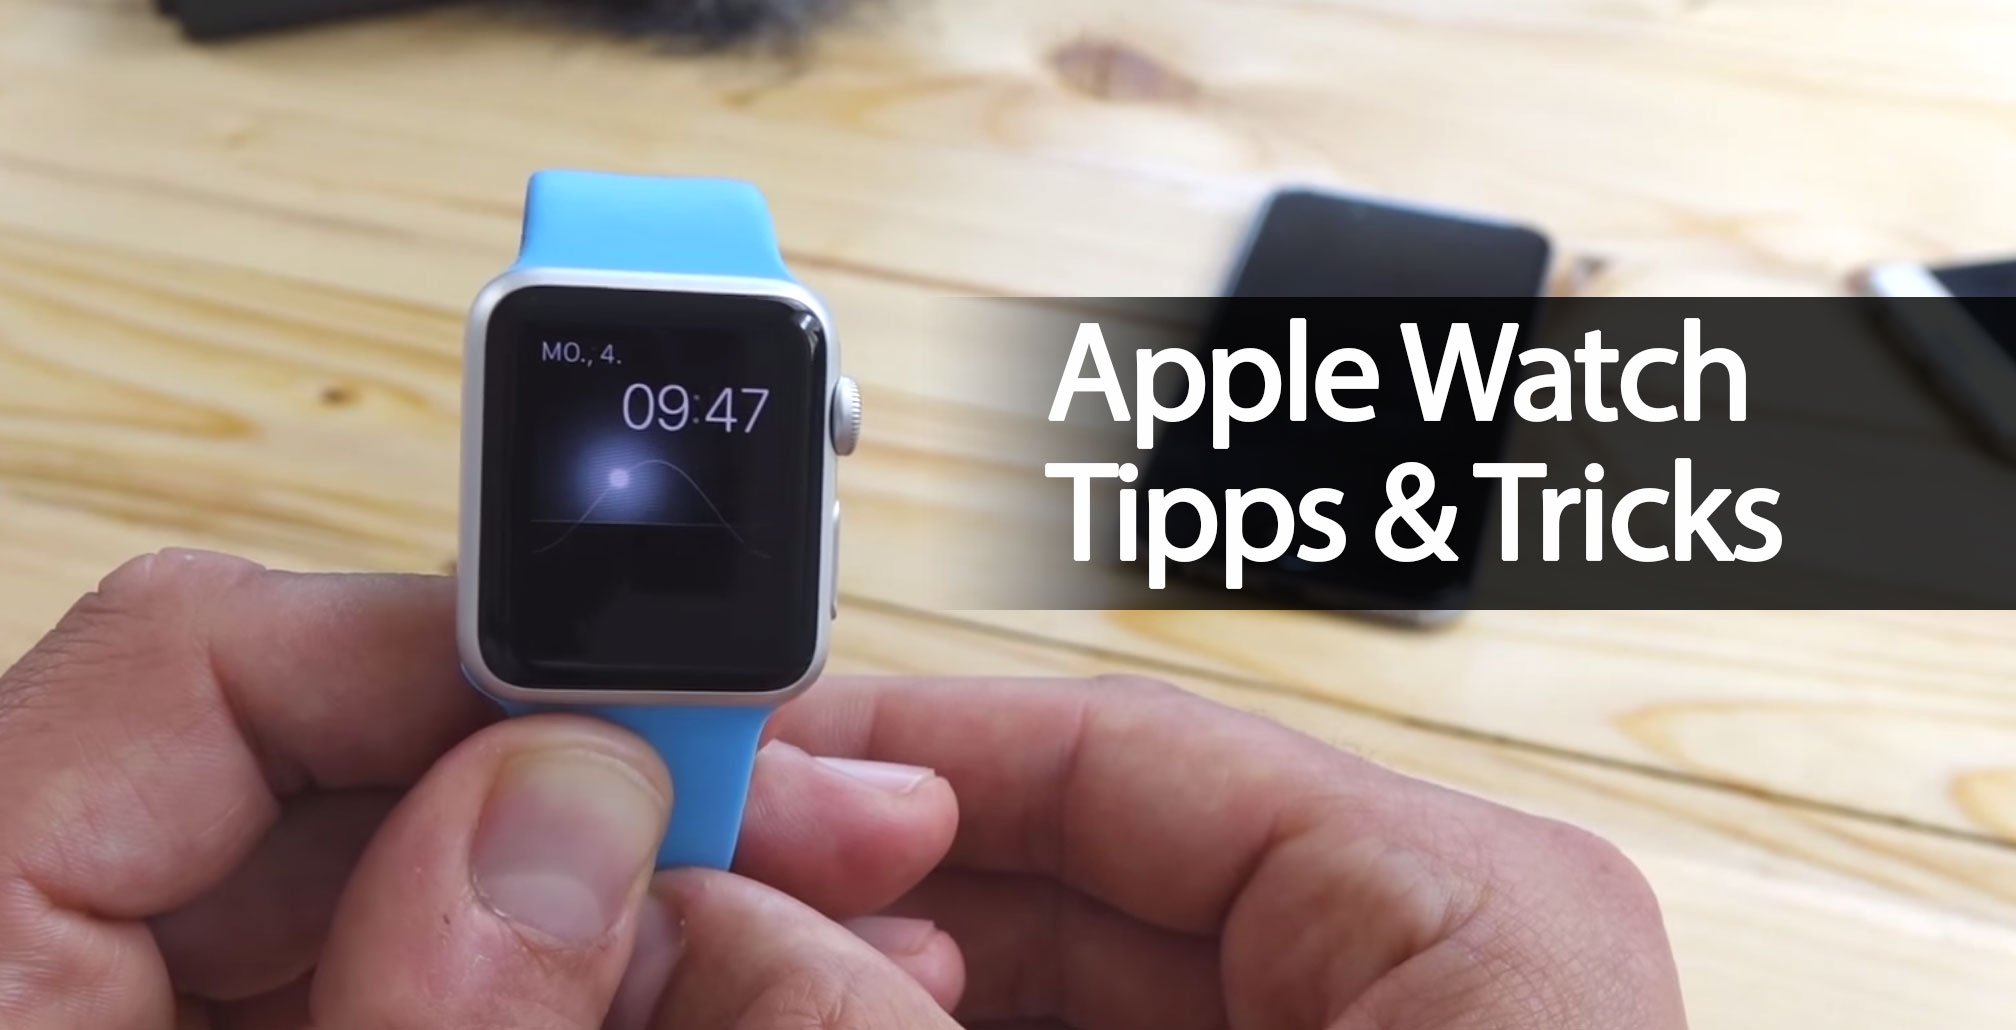 Apple Watch Tipps & Tricks im Video 7